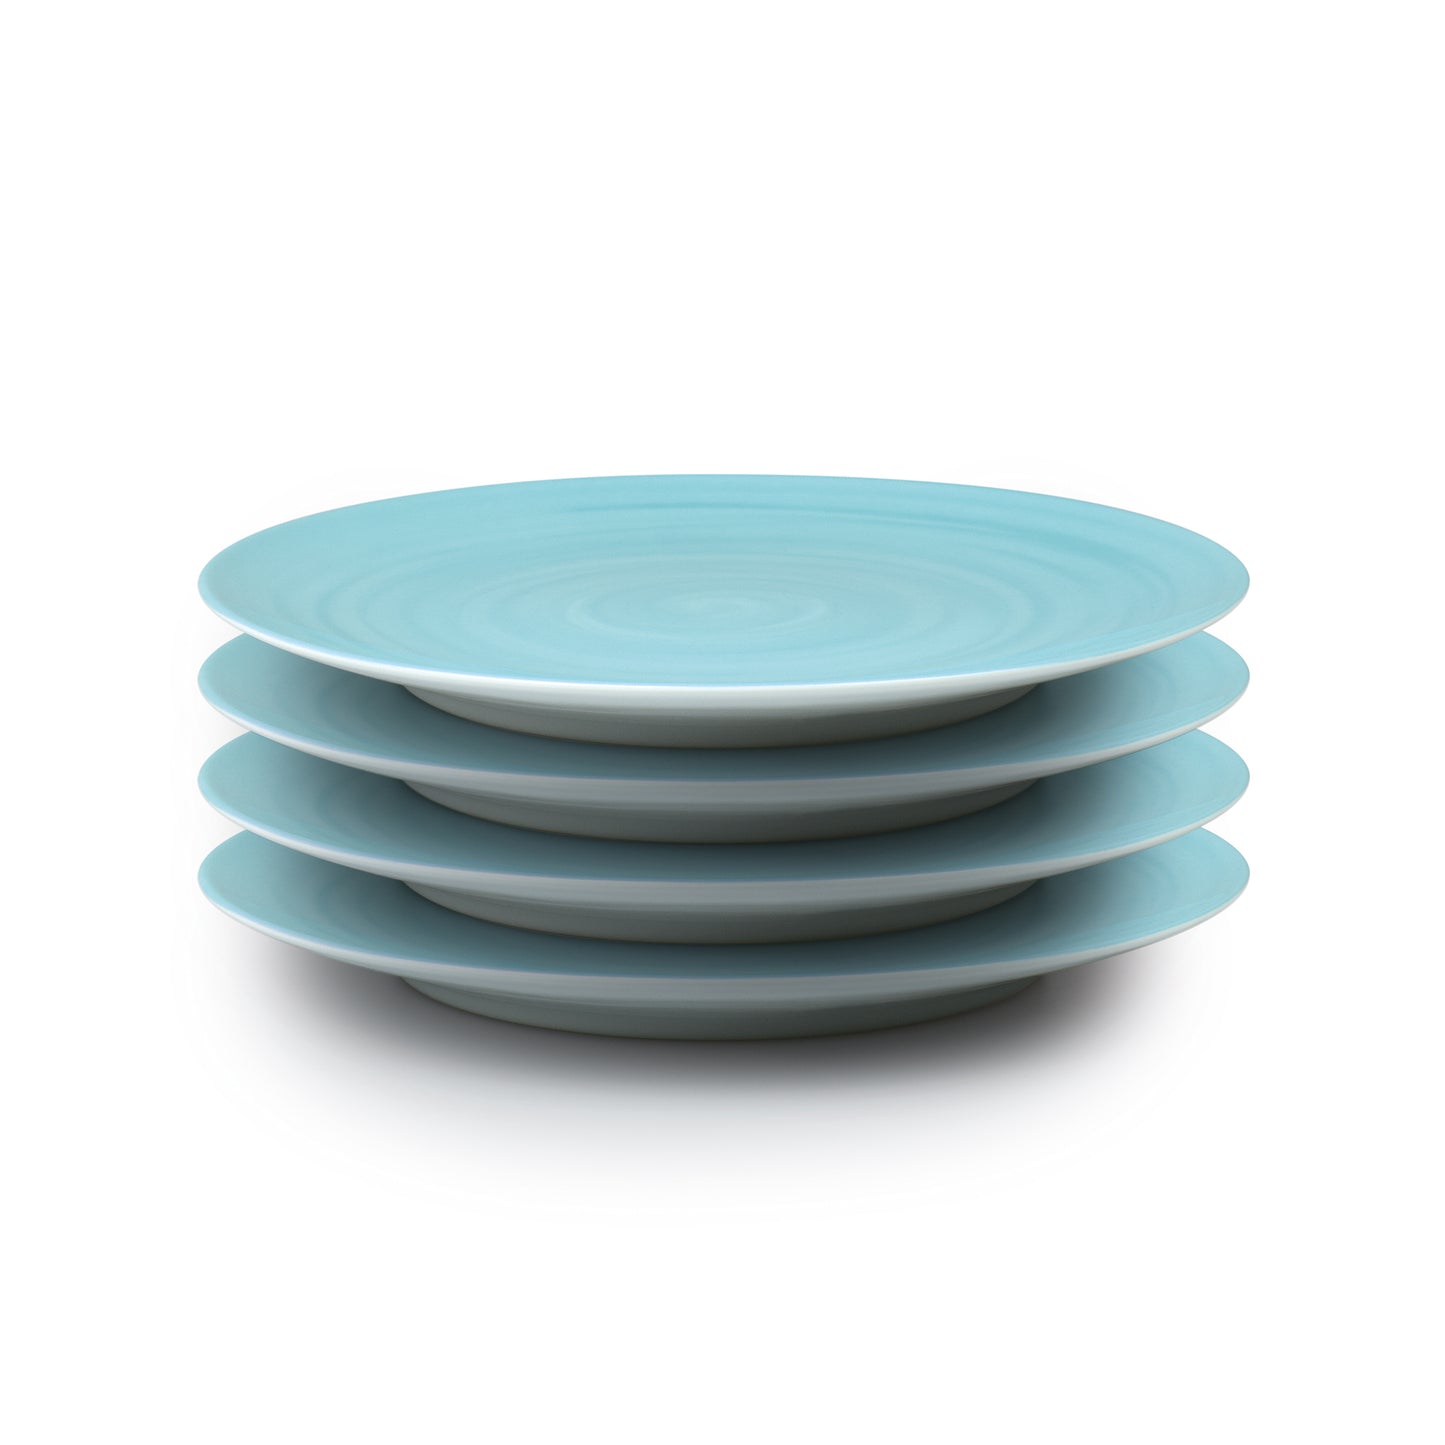 Set of 4 Culinaria dinner plates 27cm - Sky blue - hot